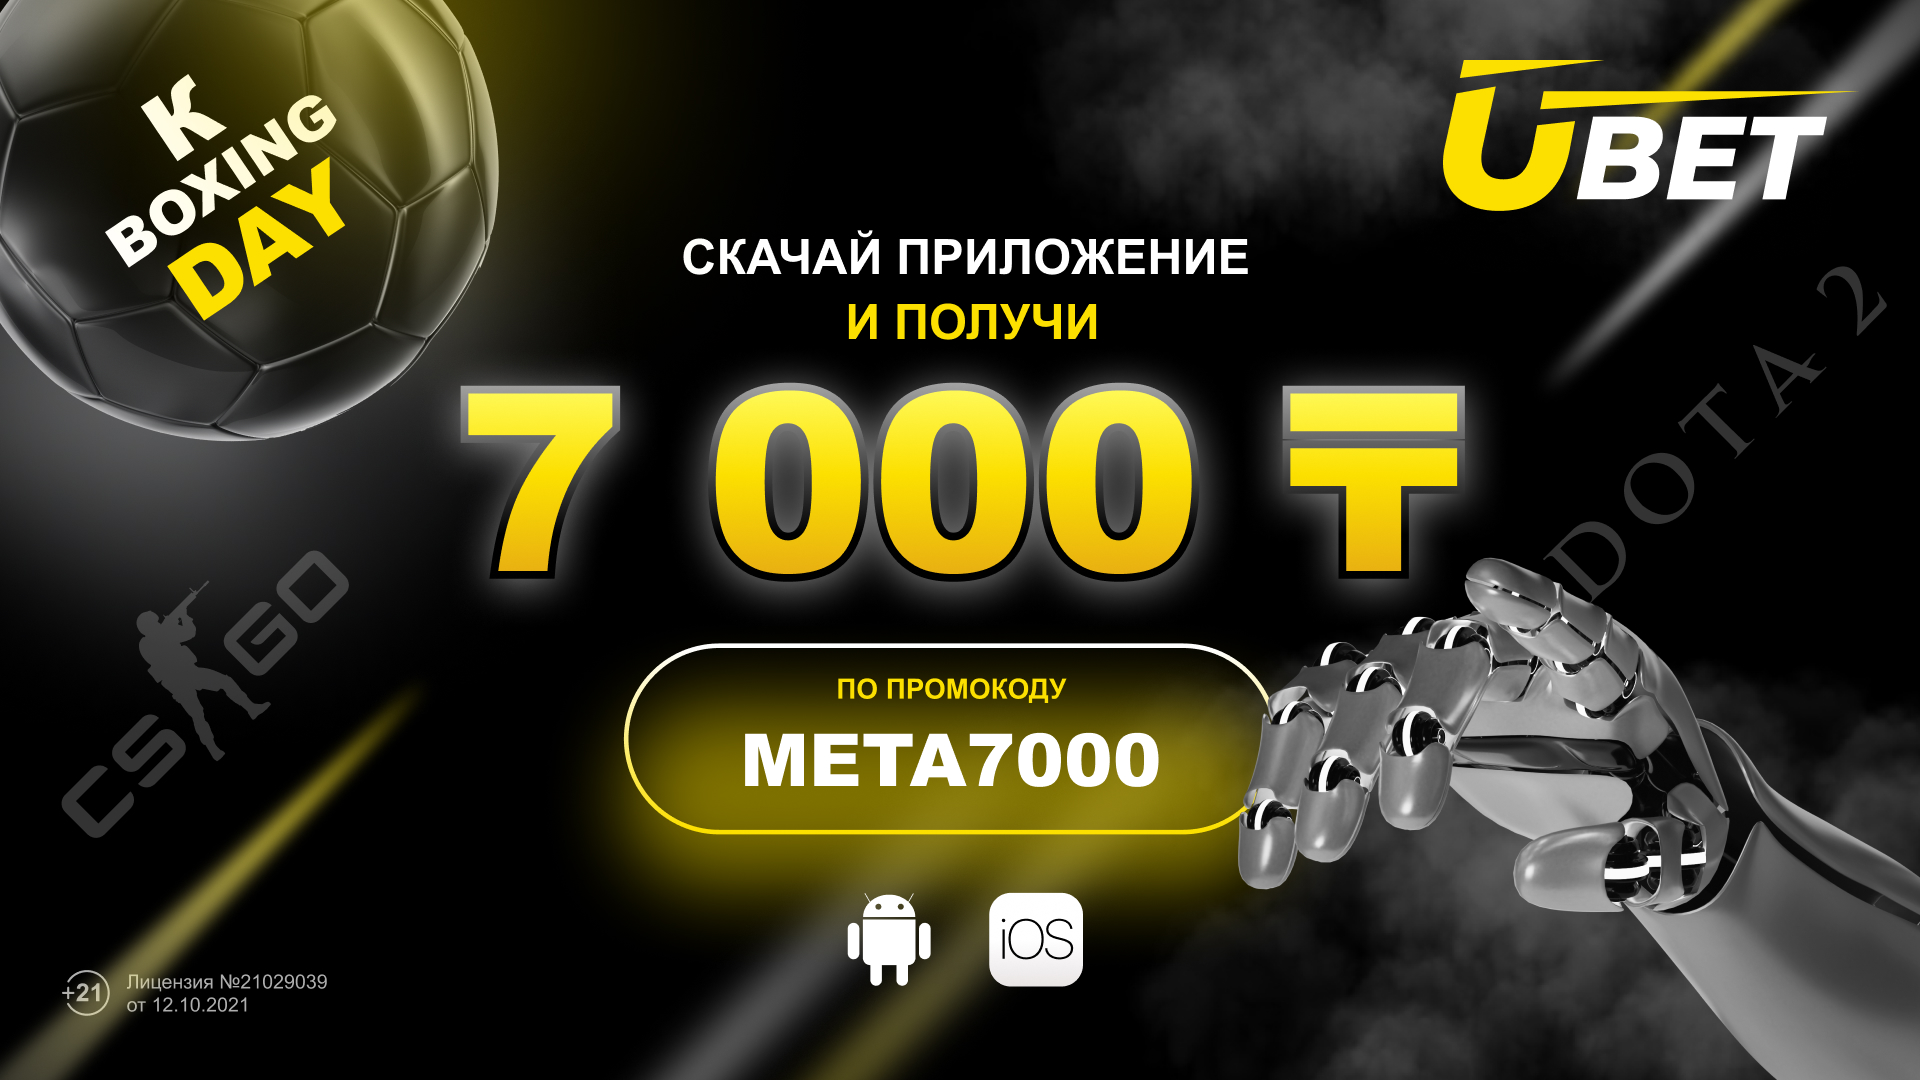 Ubet дарит бездепозитный фрибет 7000 тенге с промокодом META7000